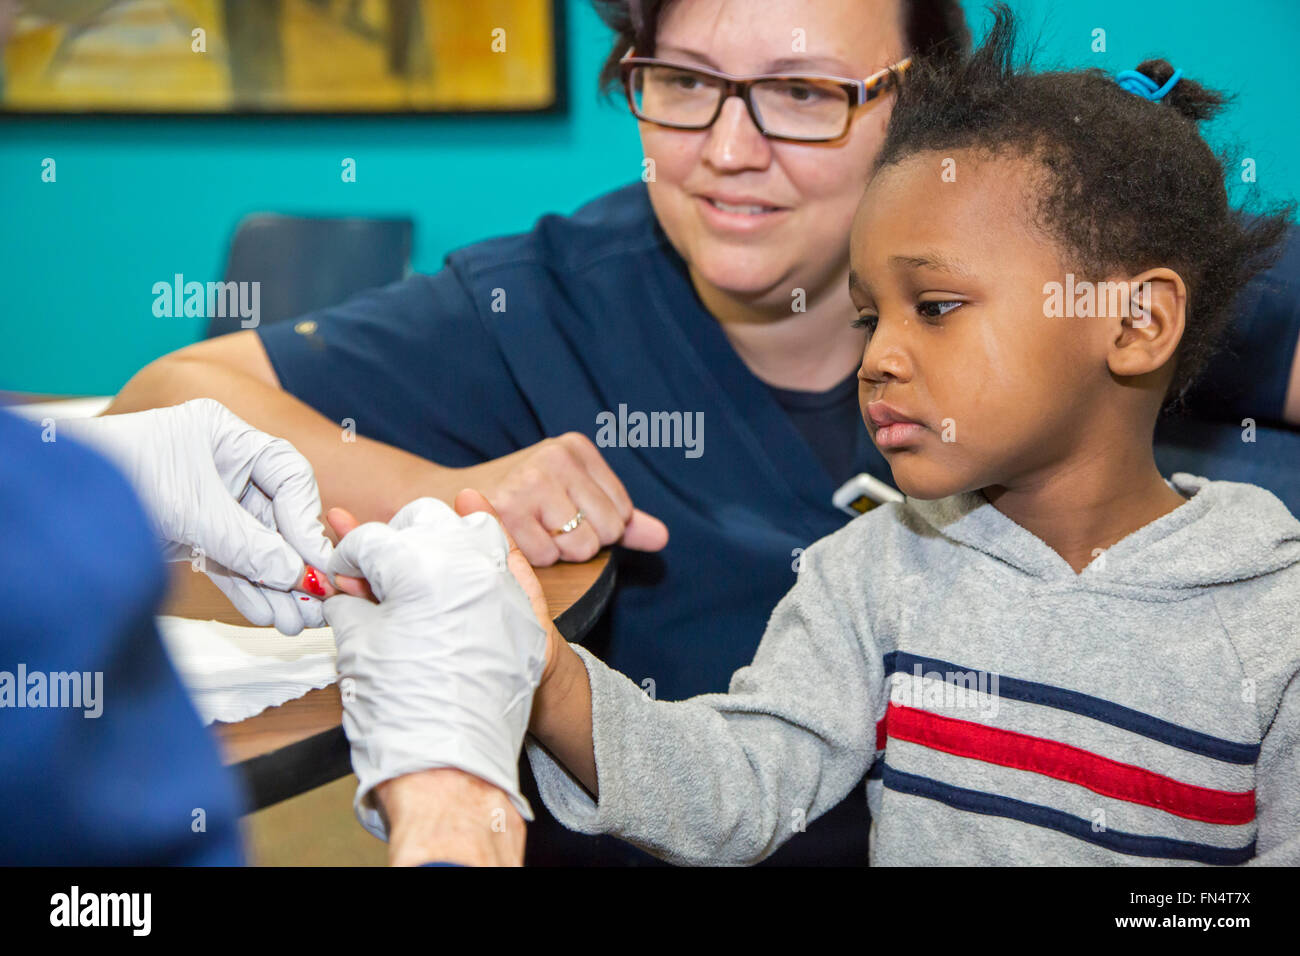 Flint, Michigan - une infirmière bénévole recueille un échantillon de sang d'Maylaysia Valsin-Cooley, 3, pour le contrôle d'exposition au plomb. Banque D'Images